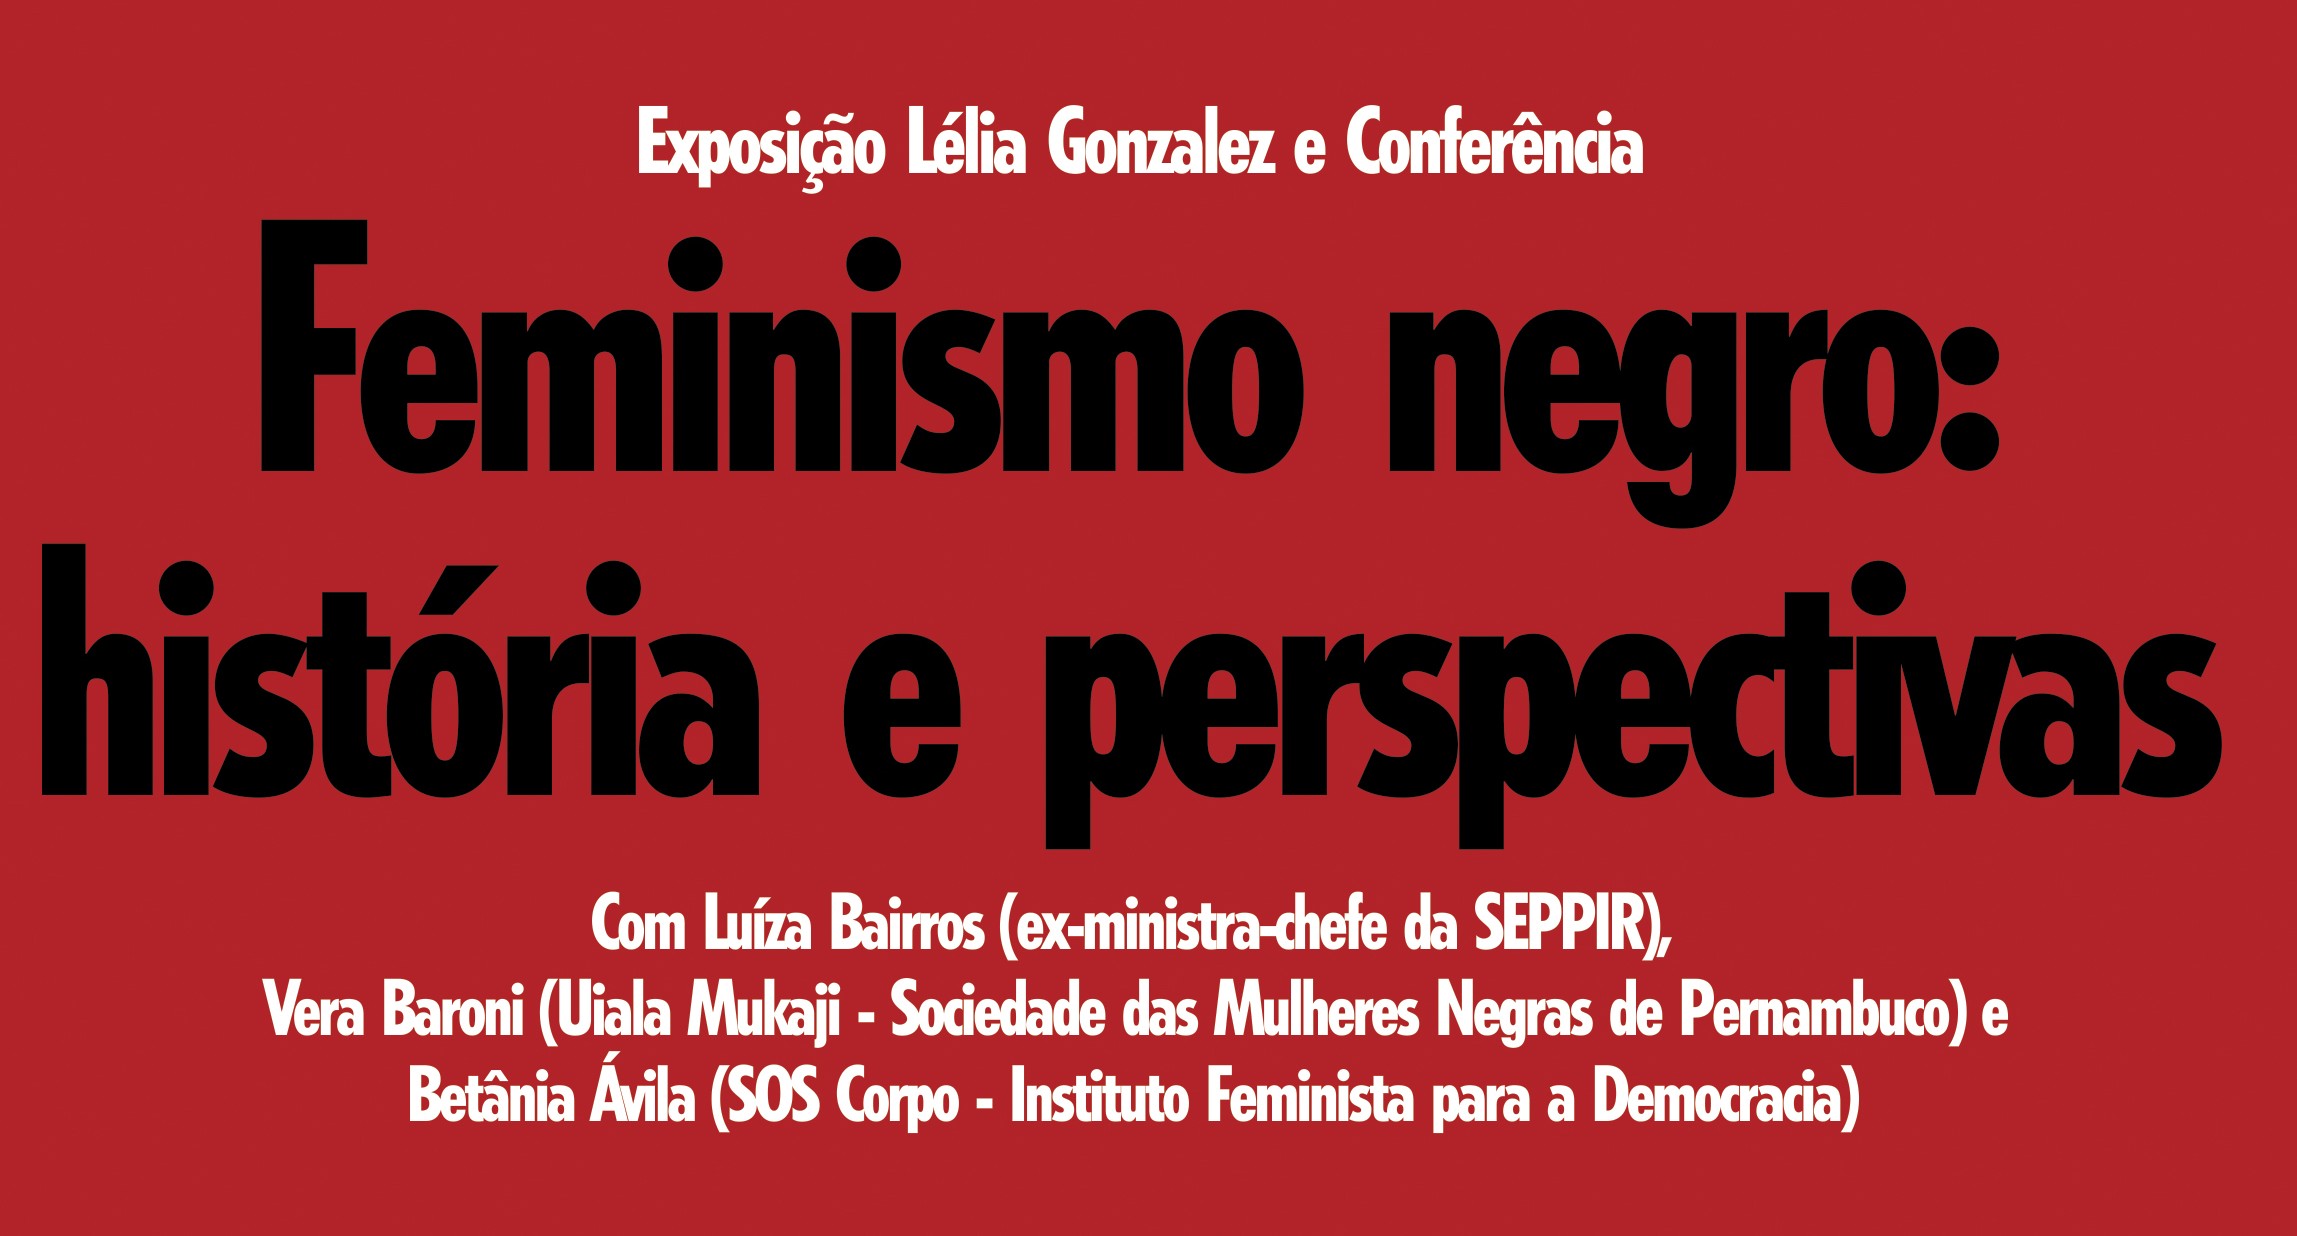 24/07/15, 18h , no Recife – Feminismo negro: debate com Luiza Bairros, Vera Baroni e Betânia Ávila